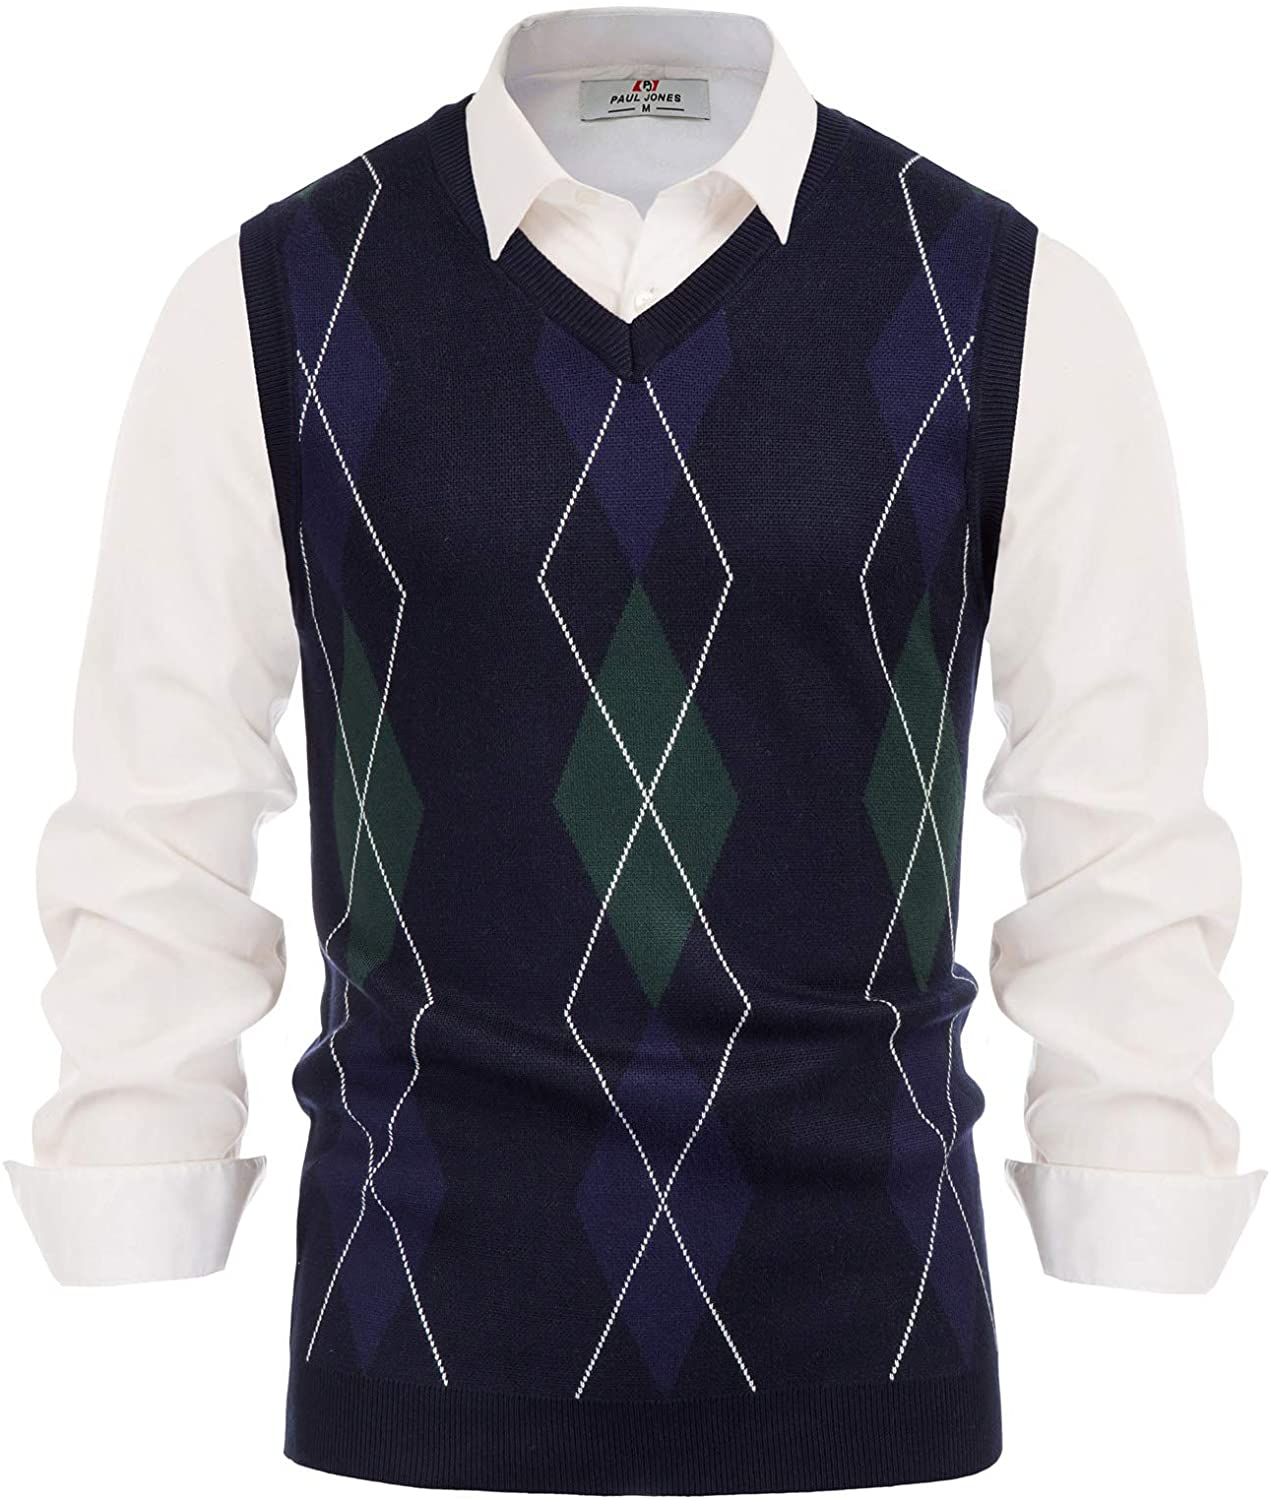 Paul Jones Men's Argyle Sweater Vest Knitted Casual V-Neck Pullover Vest 